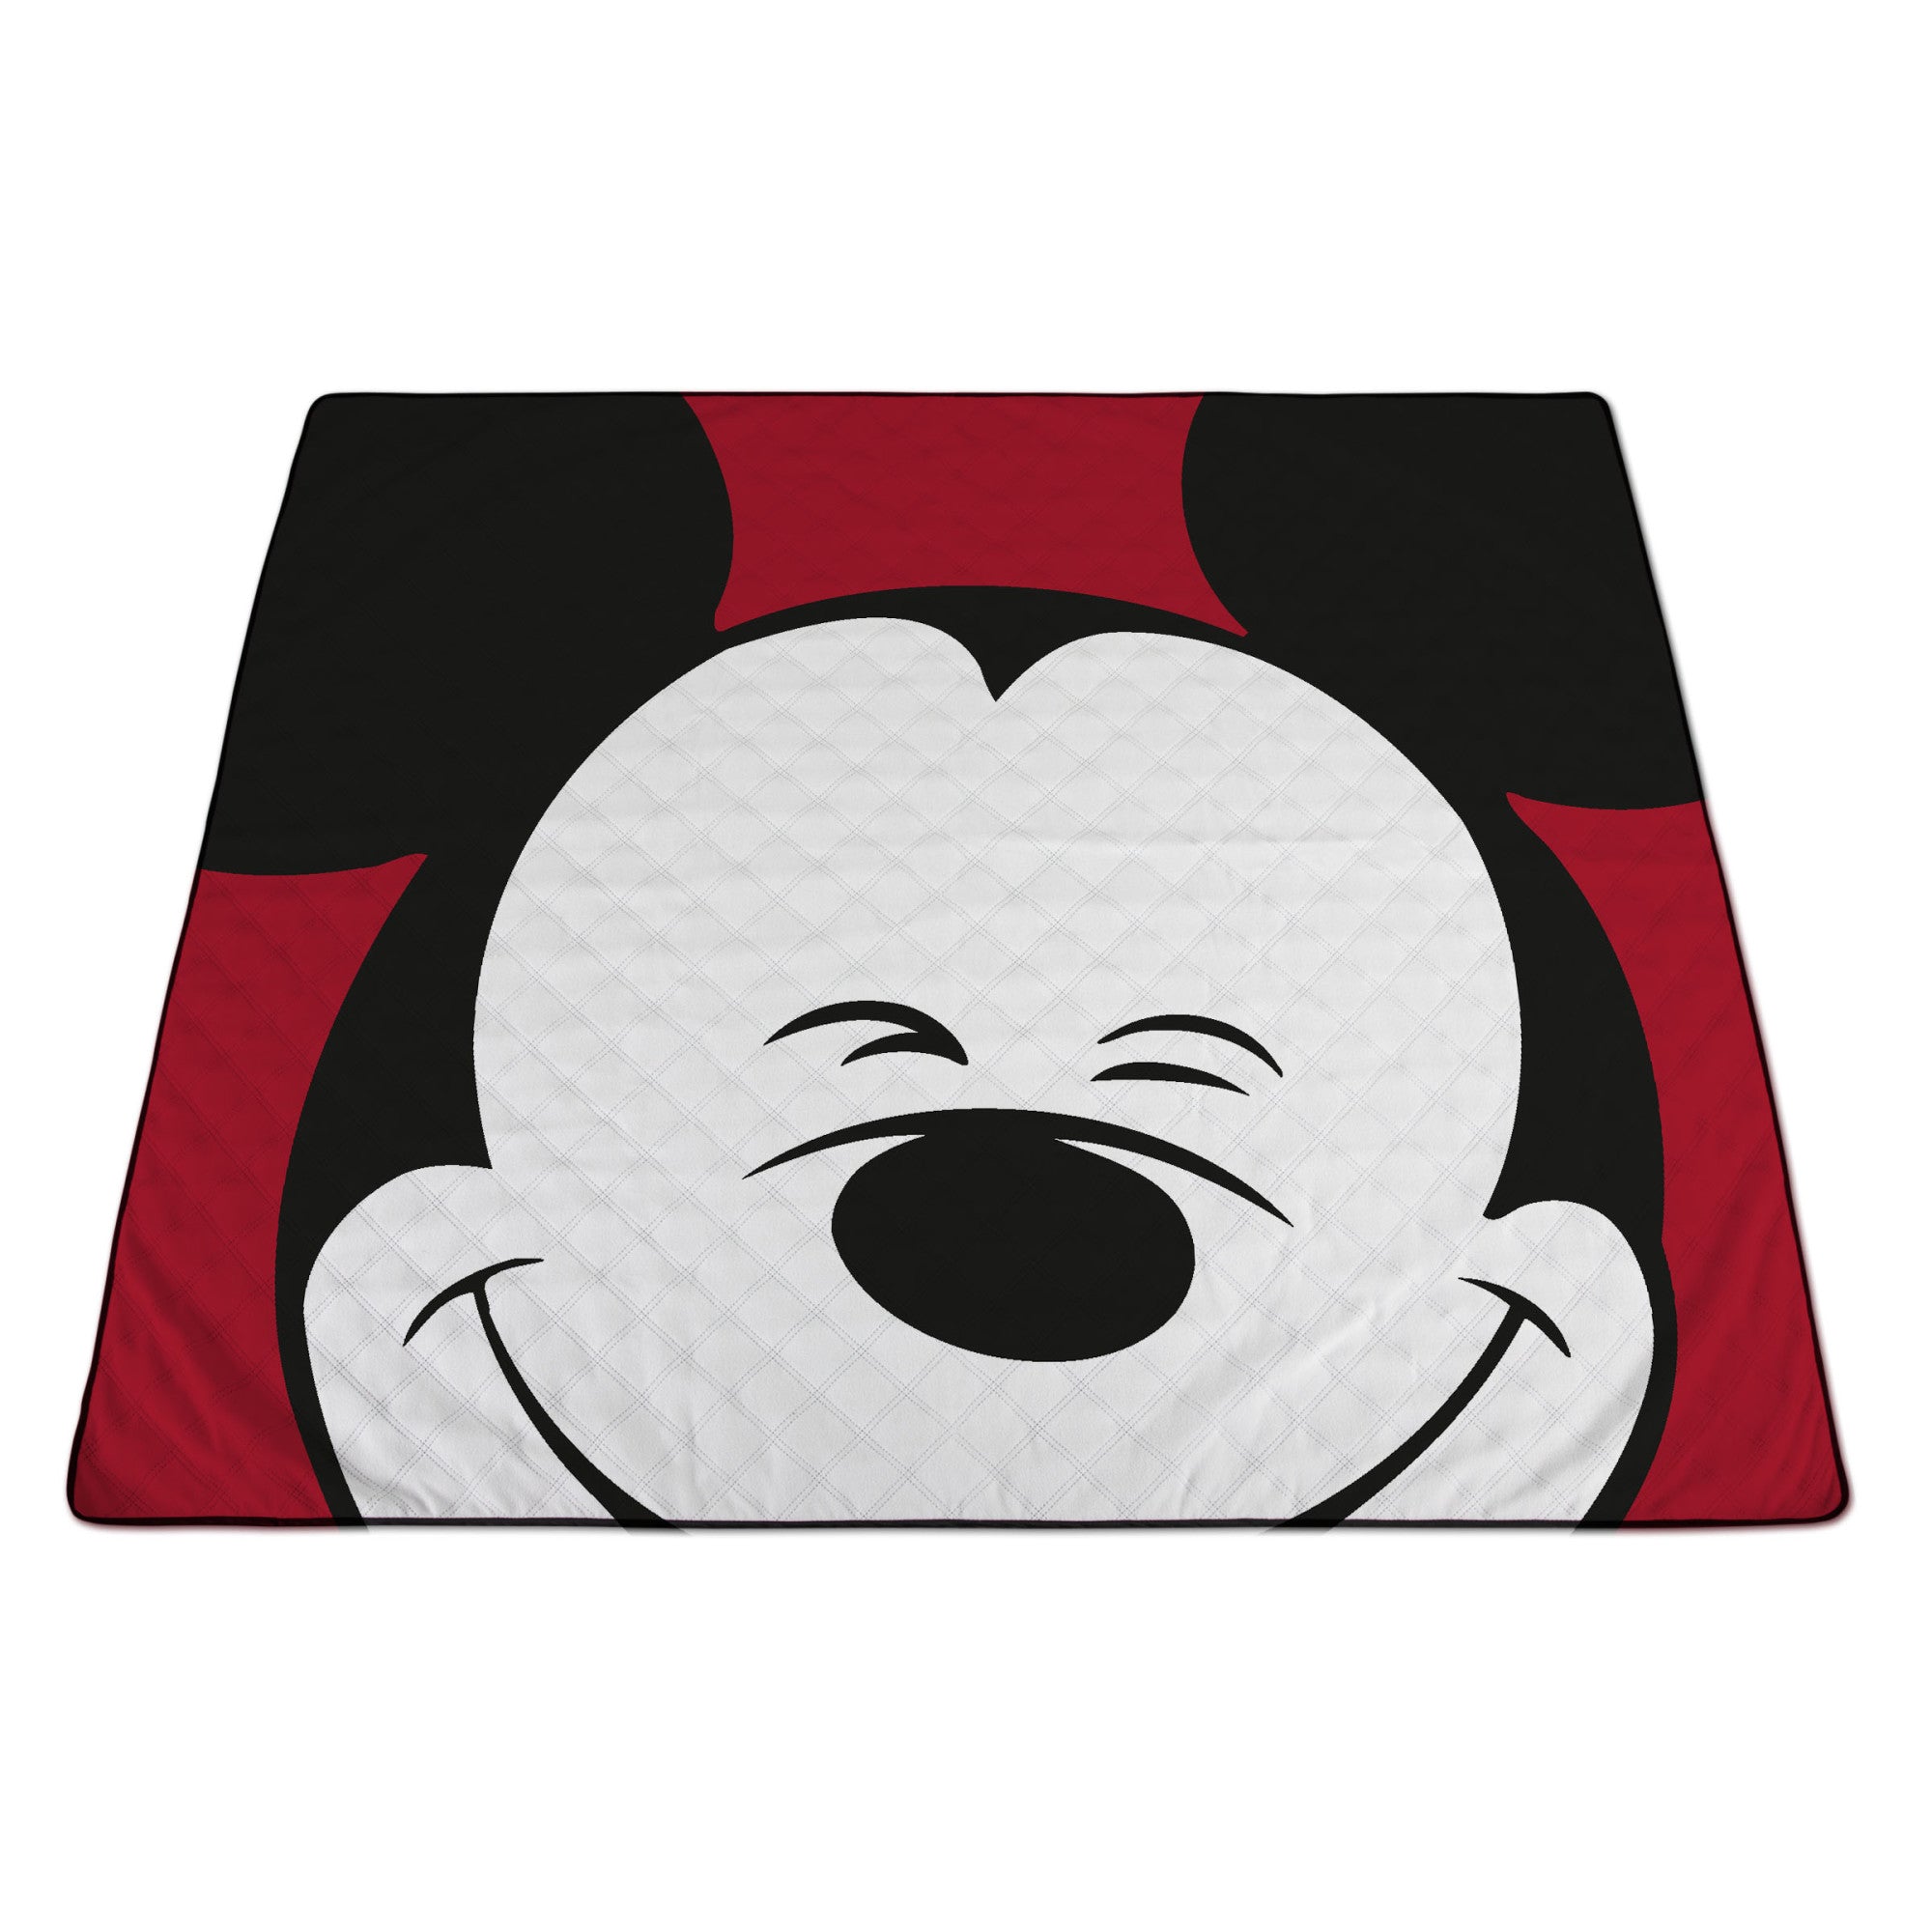 Mickey Mouse - Impresa Picnic Blanket